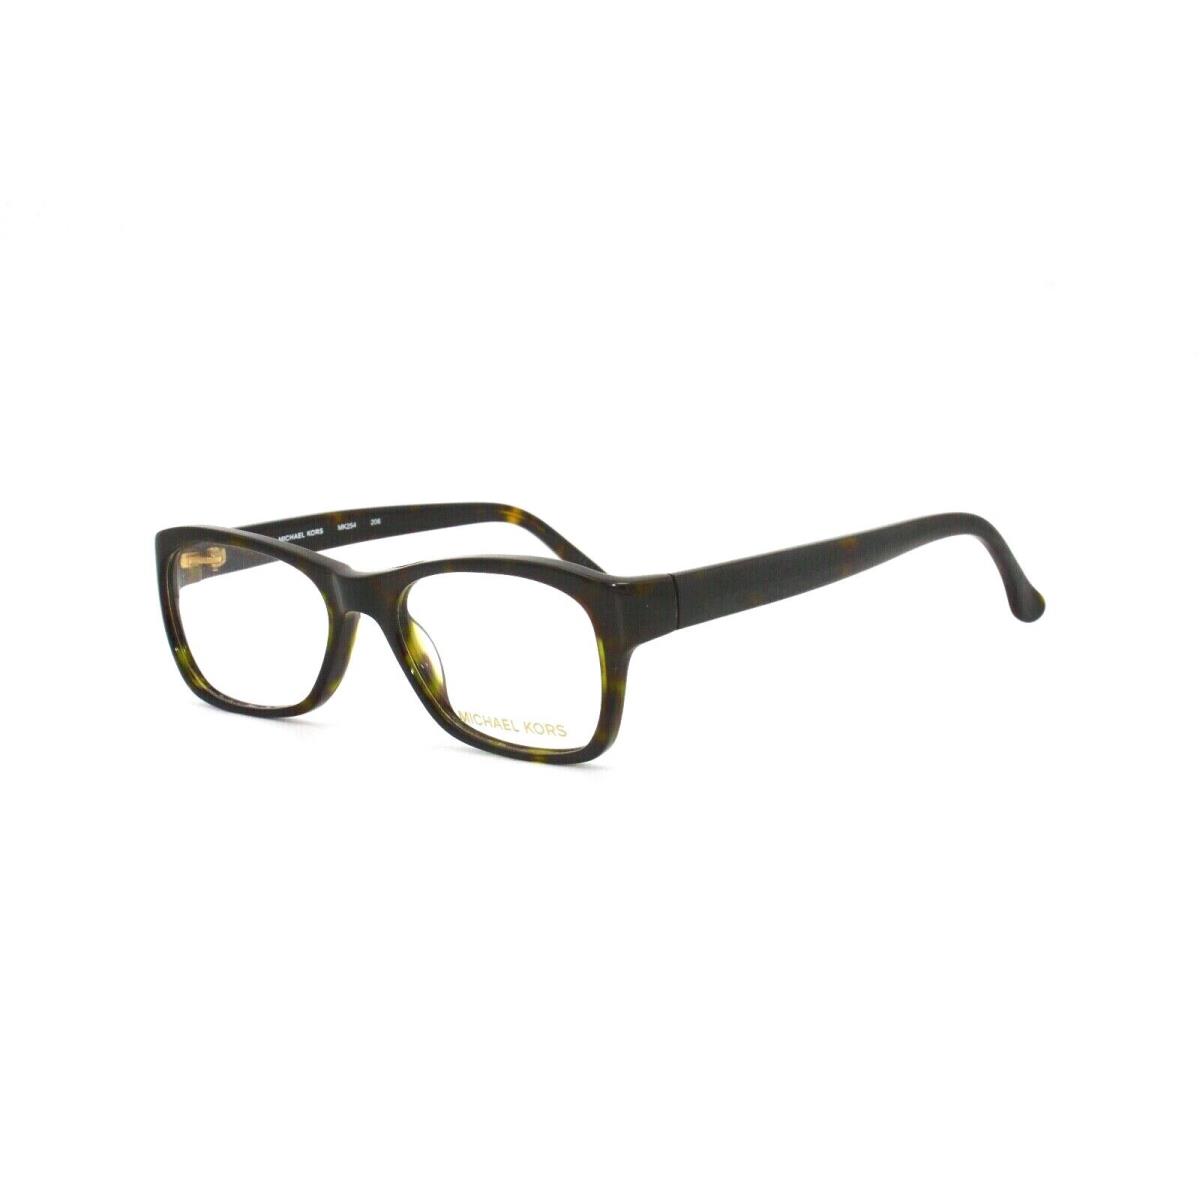 Michael Kors Eyeglass Frame MK254 206 50 17 130